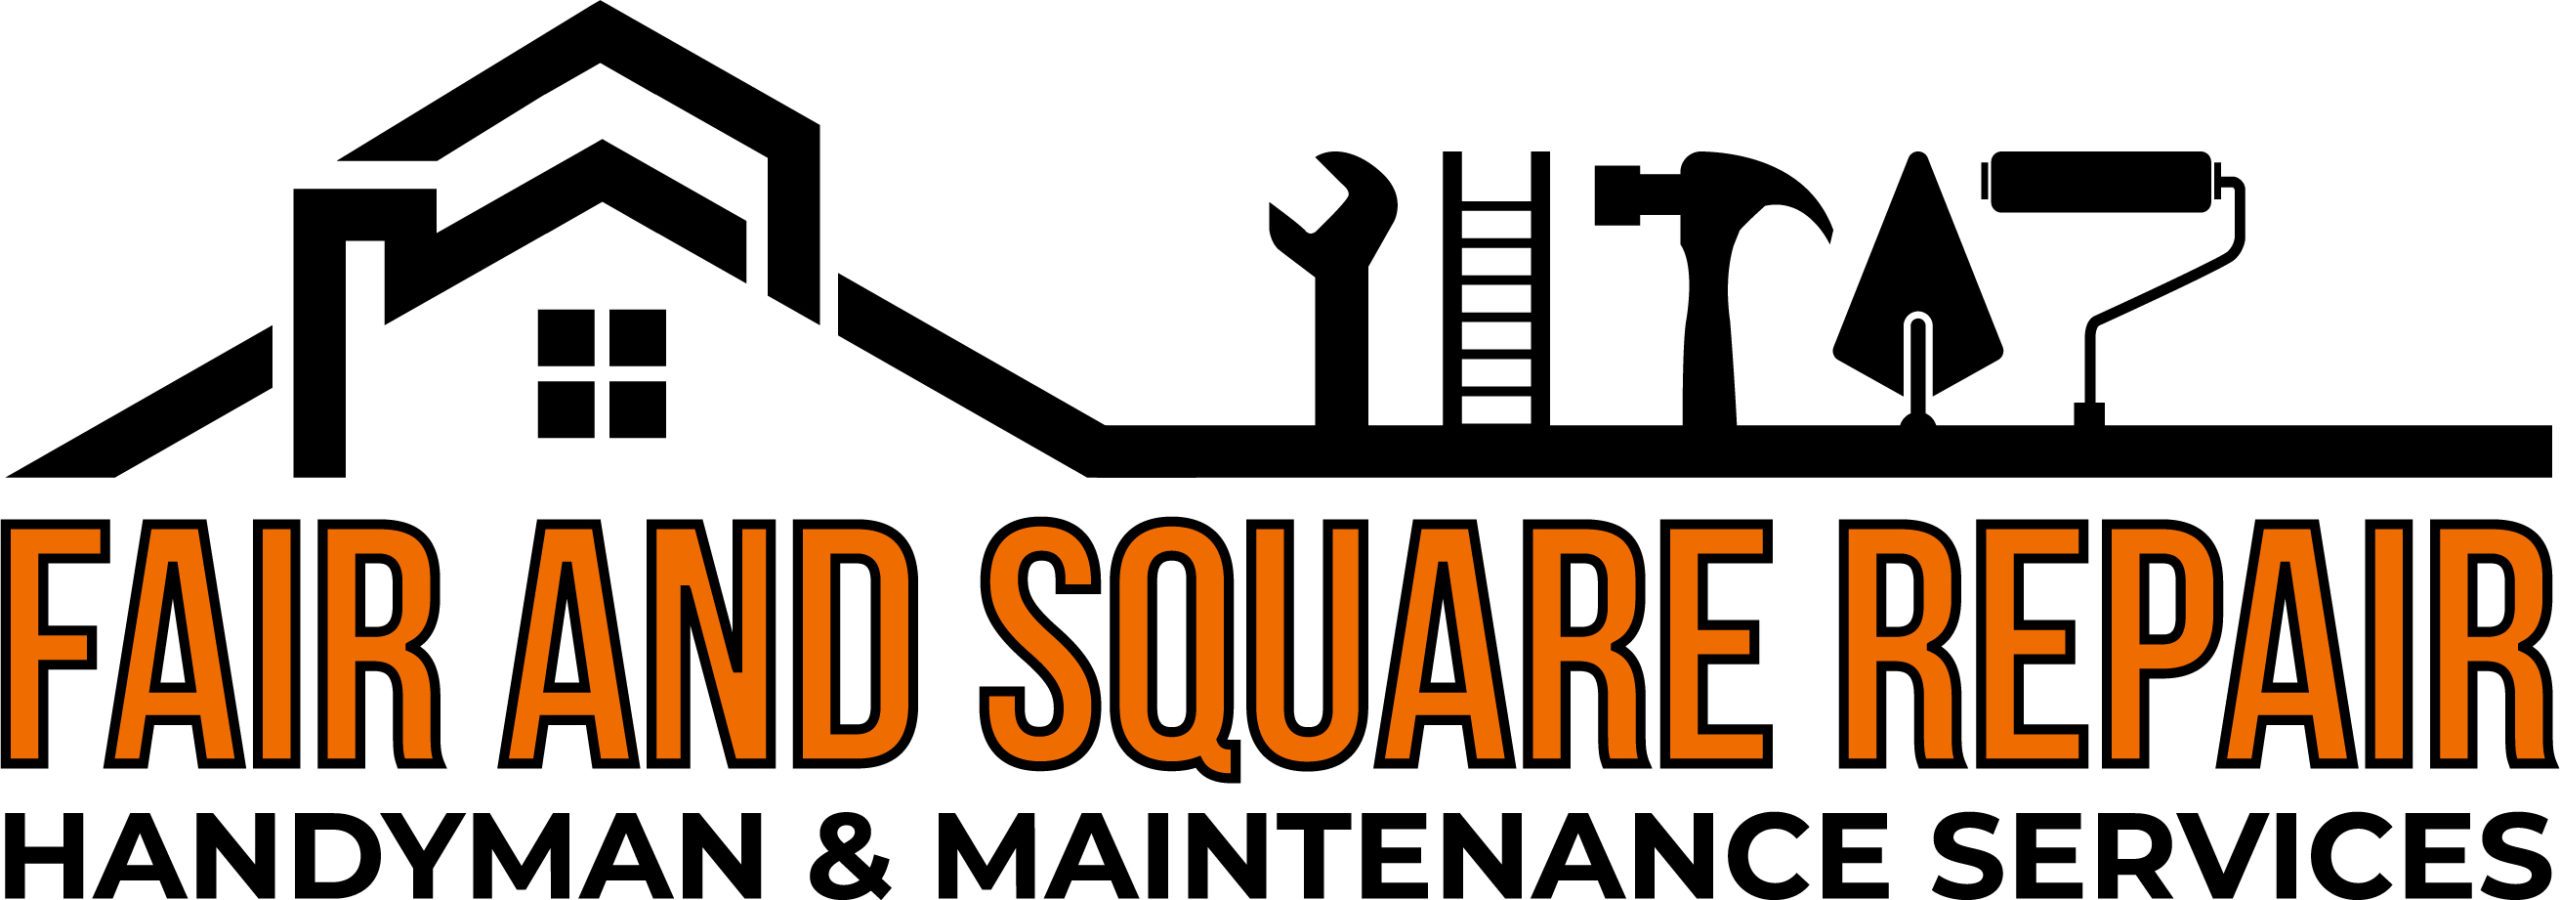 Fair and Square Repair - Handyman & Maintenance Services